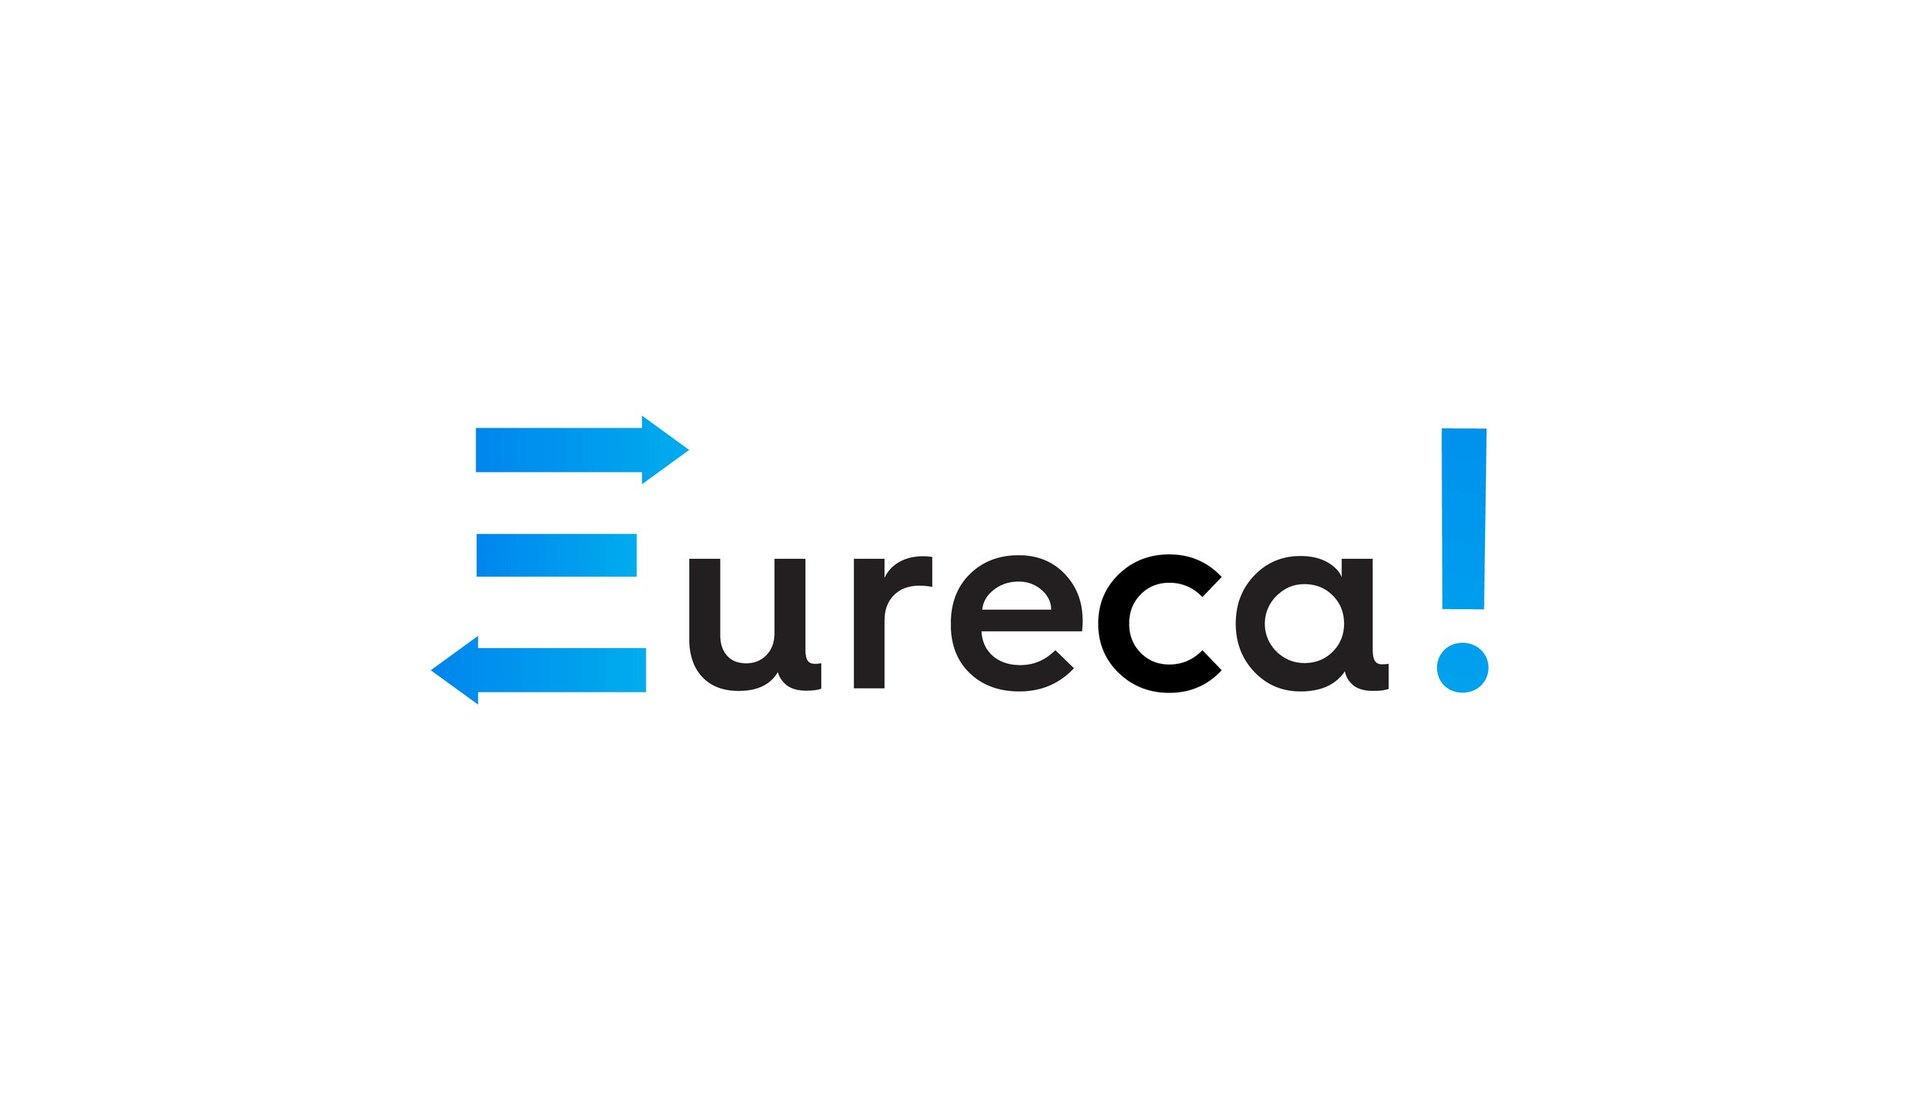 Сервис обмена идеями Eurecable.com: история создания «стартапа» - 4